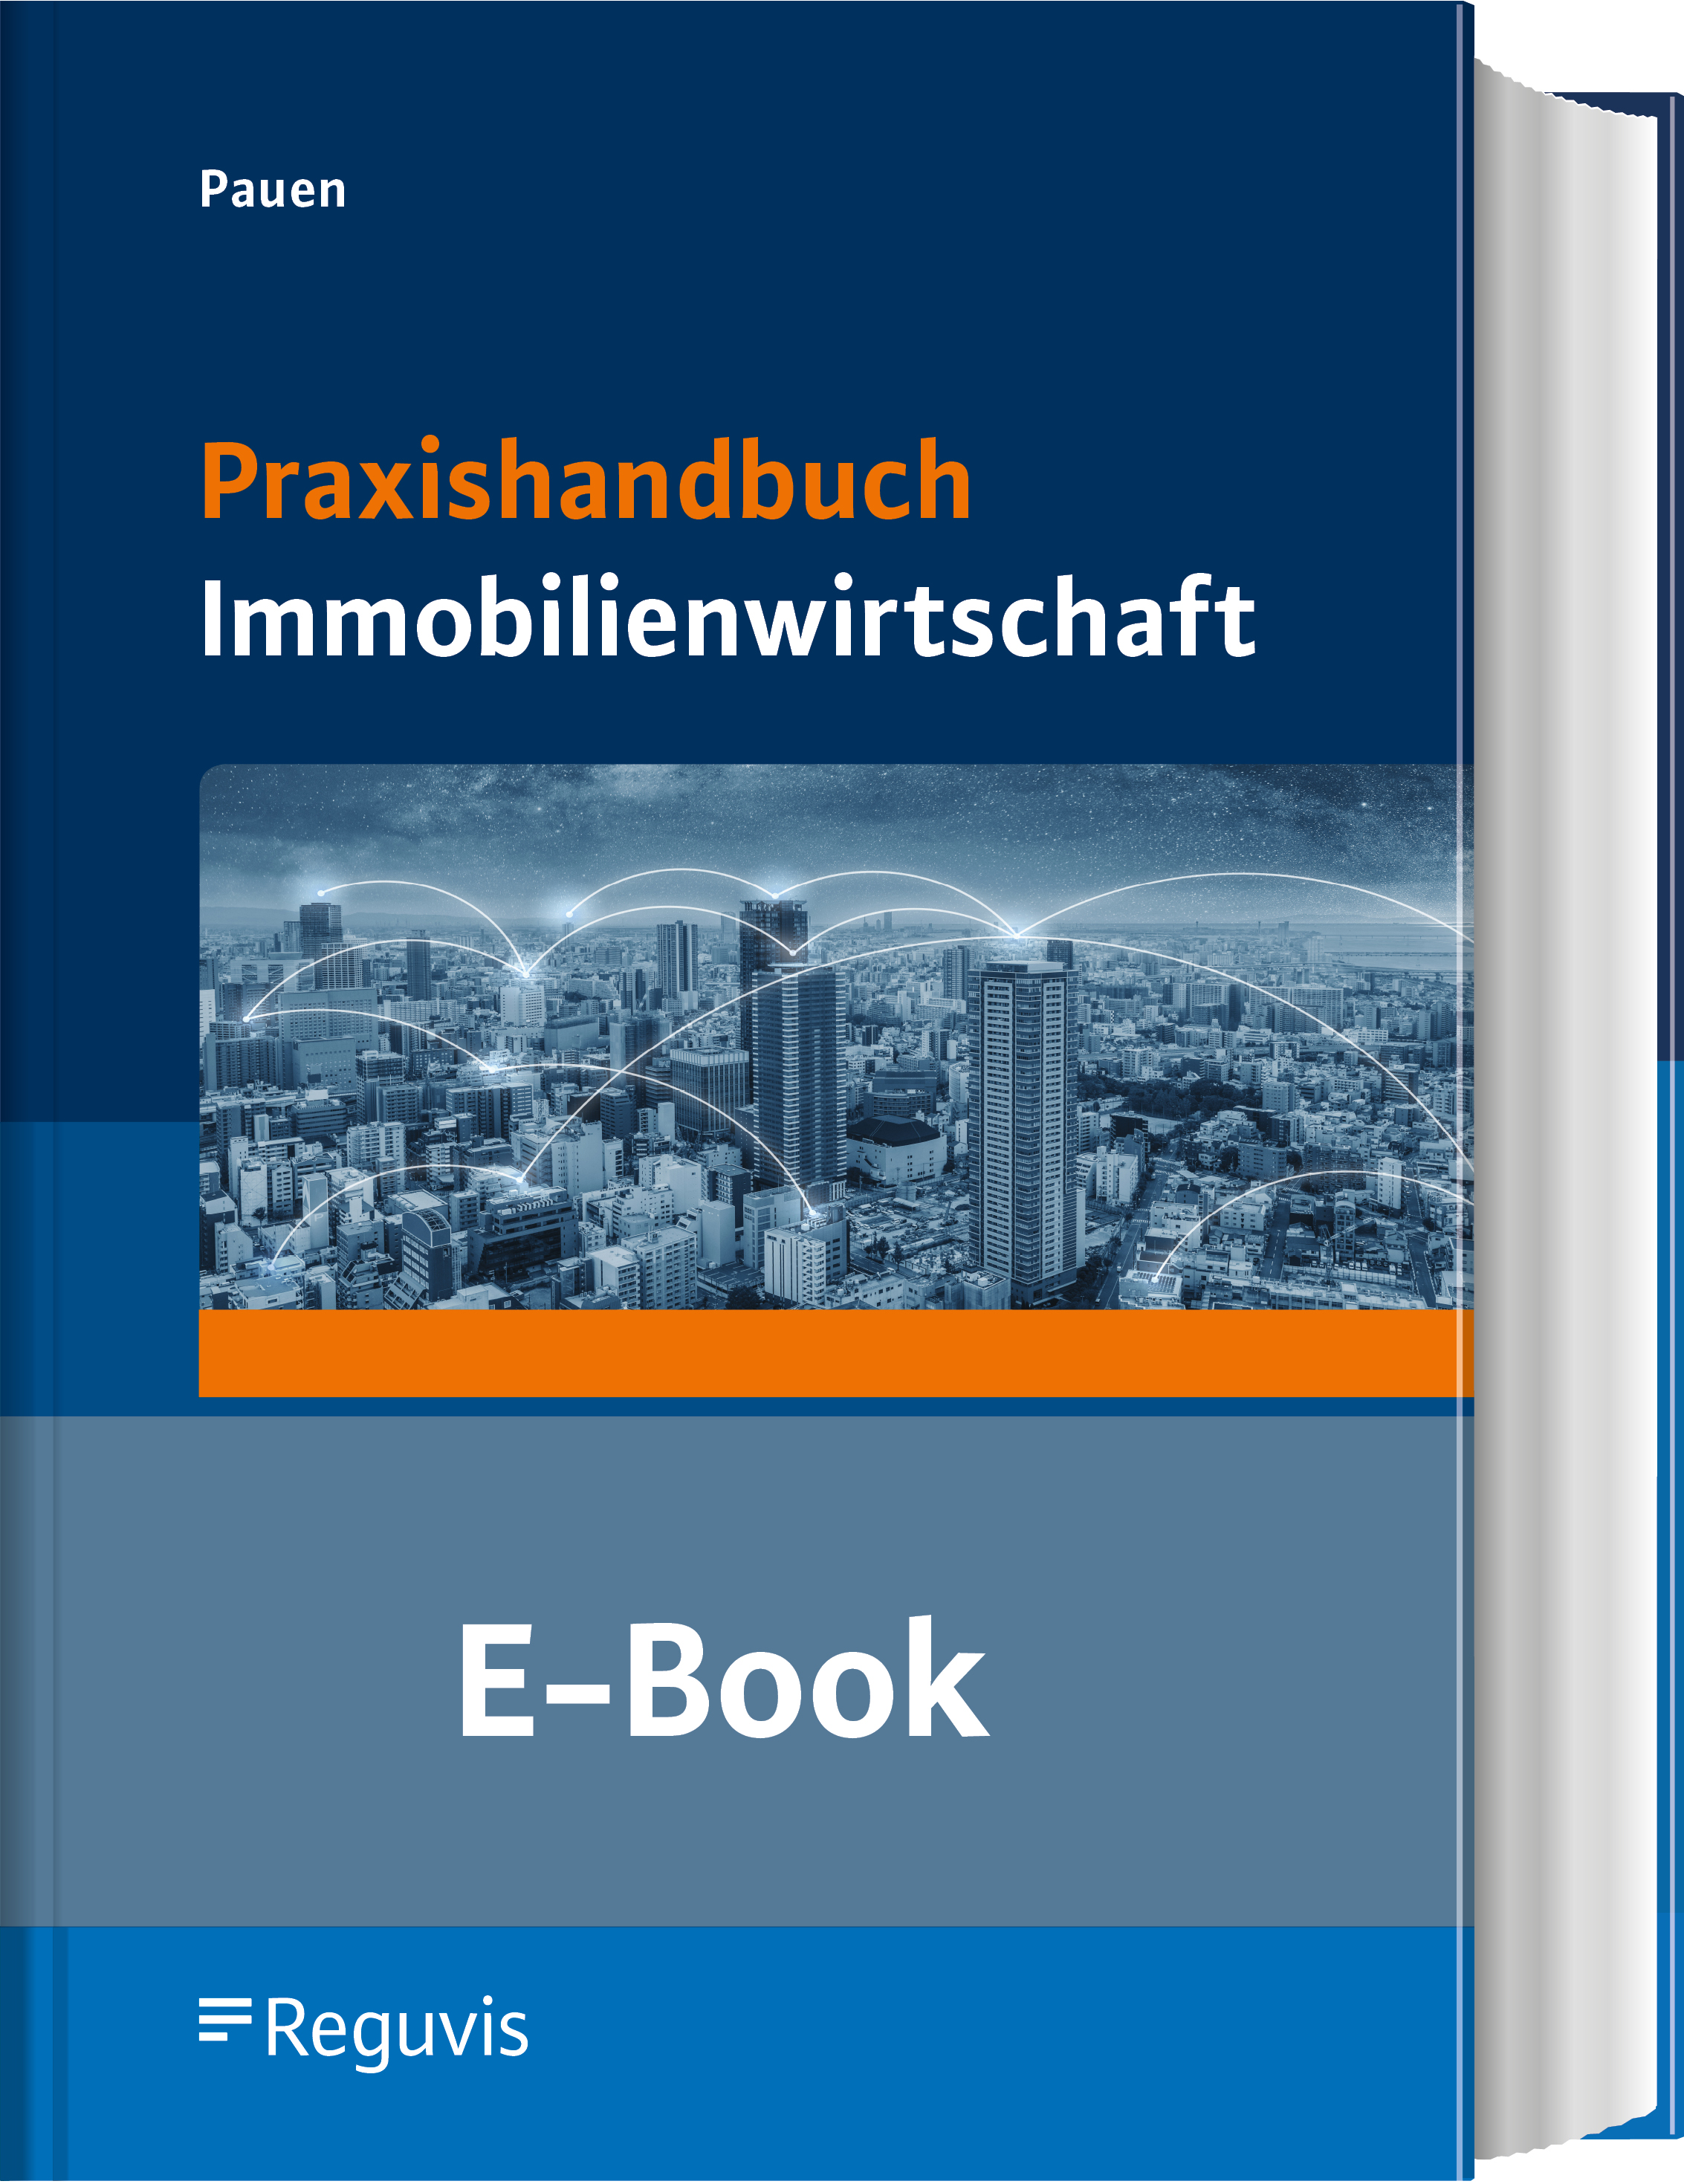 Pauen; Praxishandbuch Immobilienwirtschaft E-Book